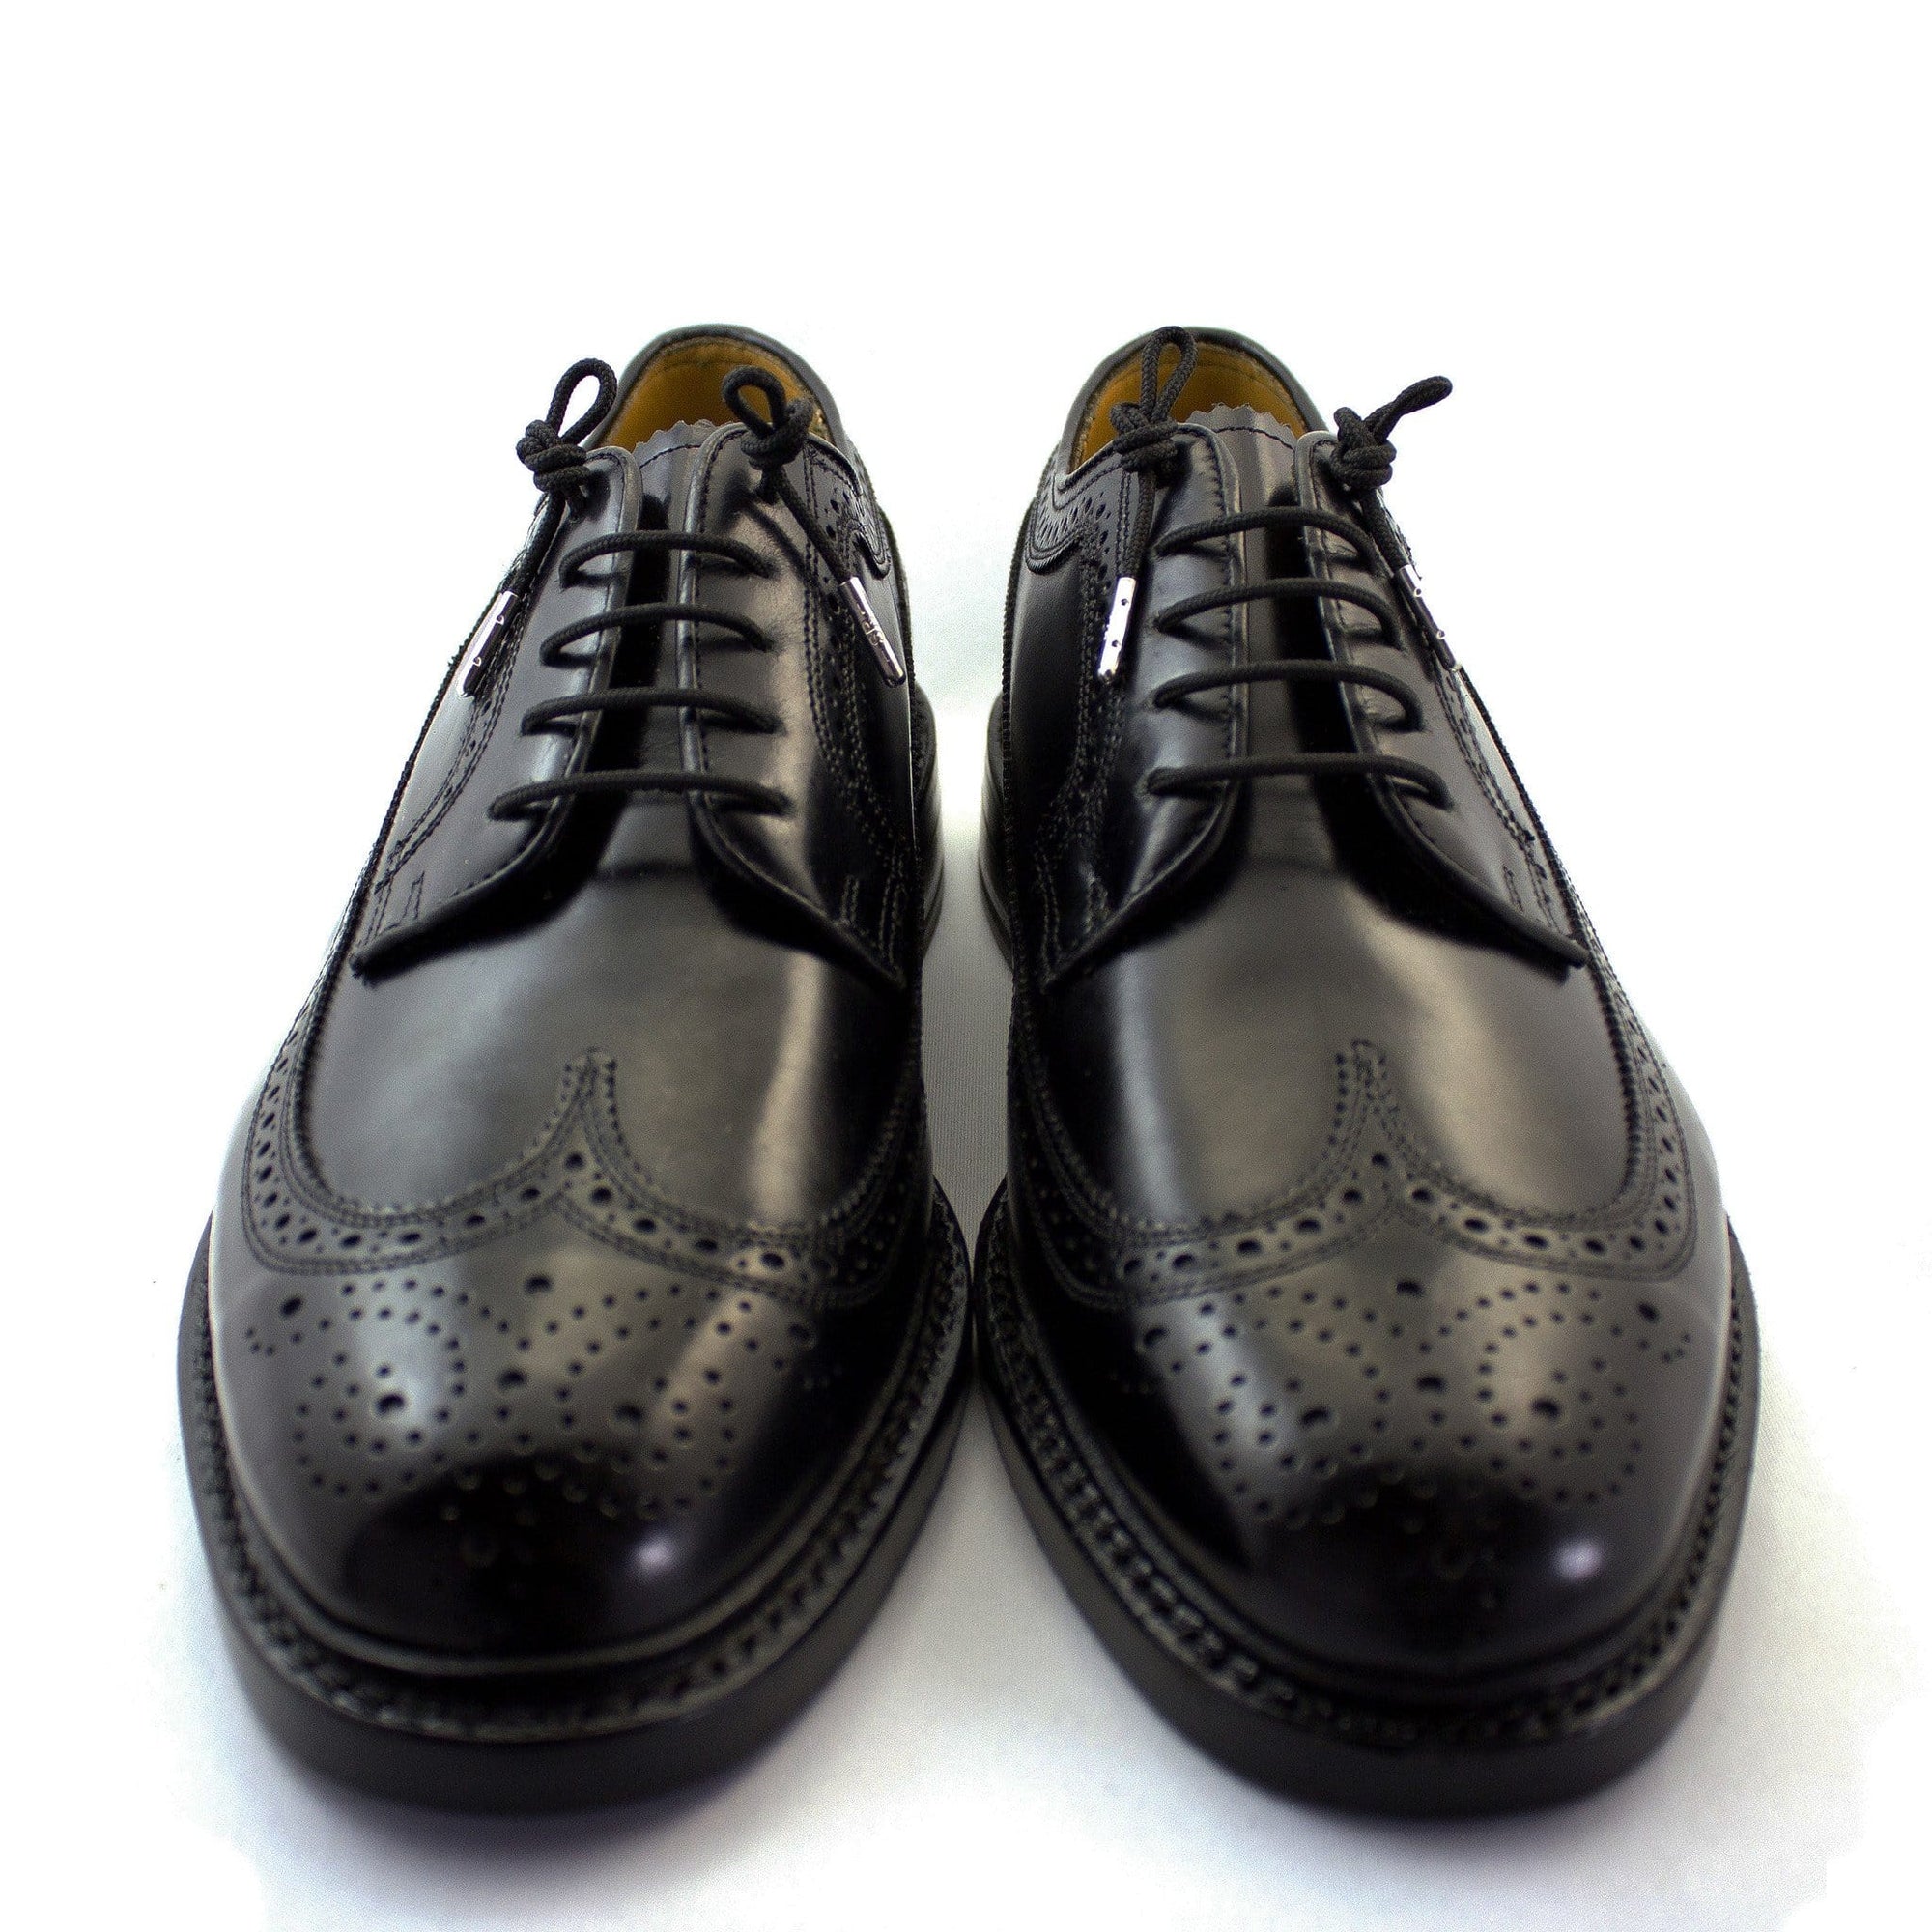 Black laces for dress shoes, Length: 32"/81cm-Stolen Riches